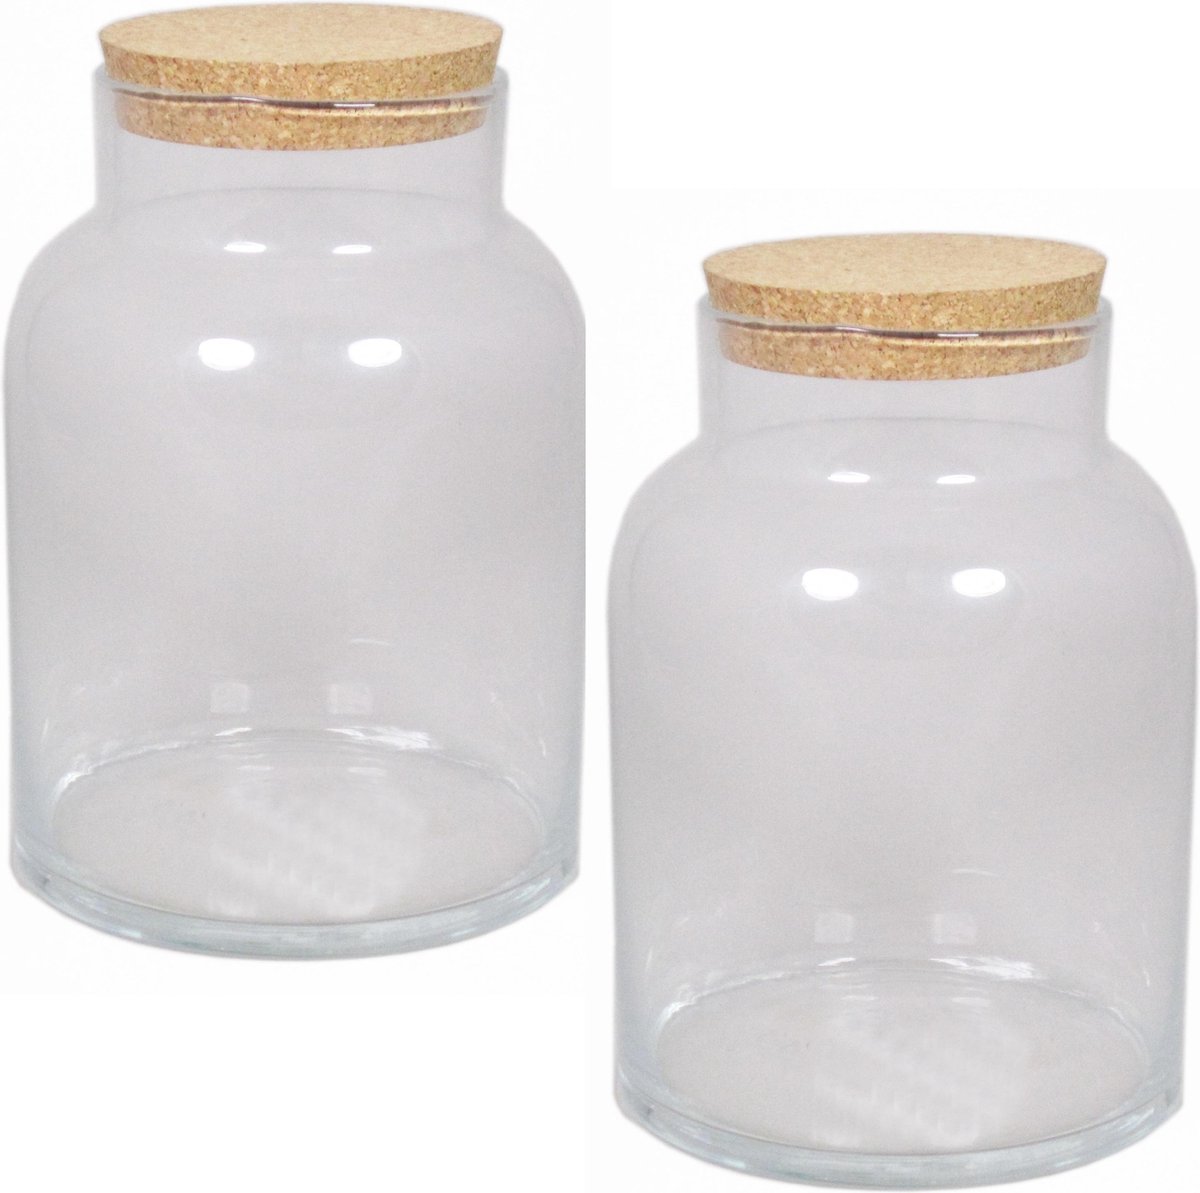 3x Glazen voorraadpotten/bewaarpotten 8 liter met kurk deksel 18 x 27 cm - Koekjespotten/snoeppotten van glas - Decoratie potten